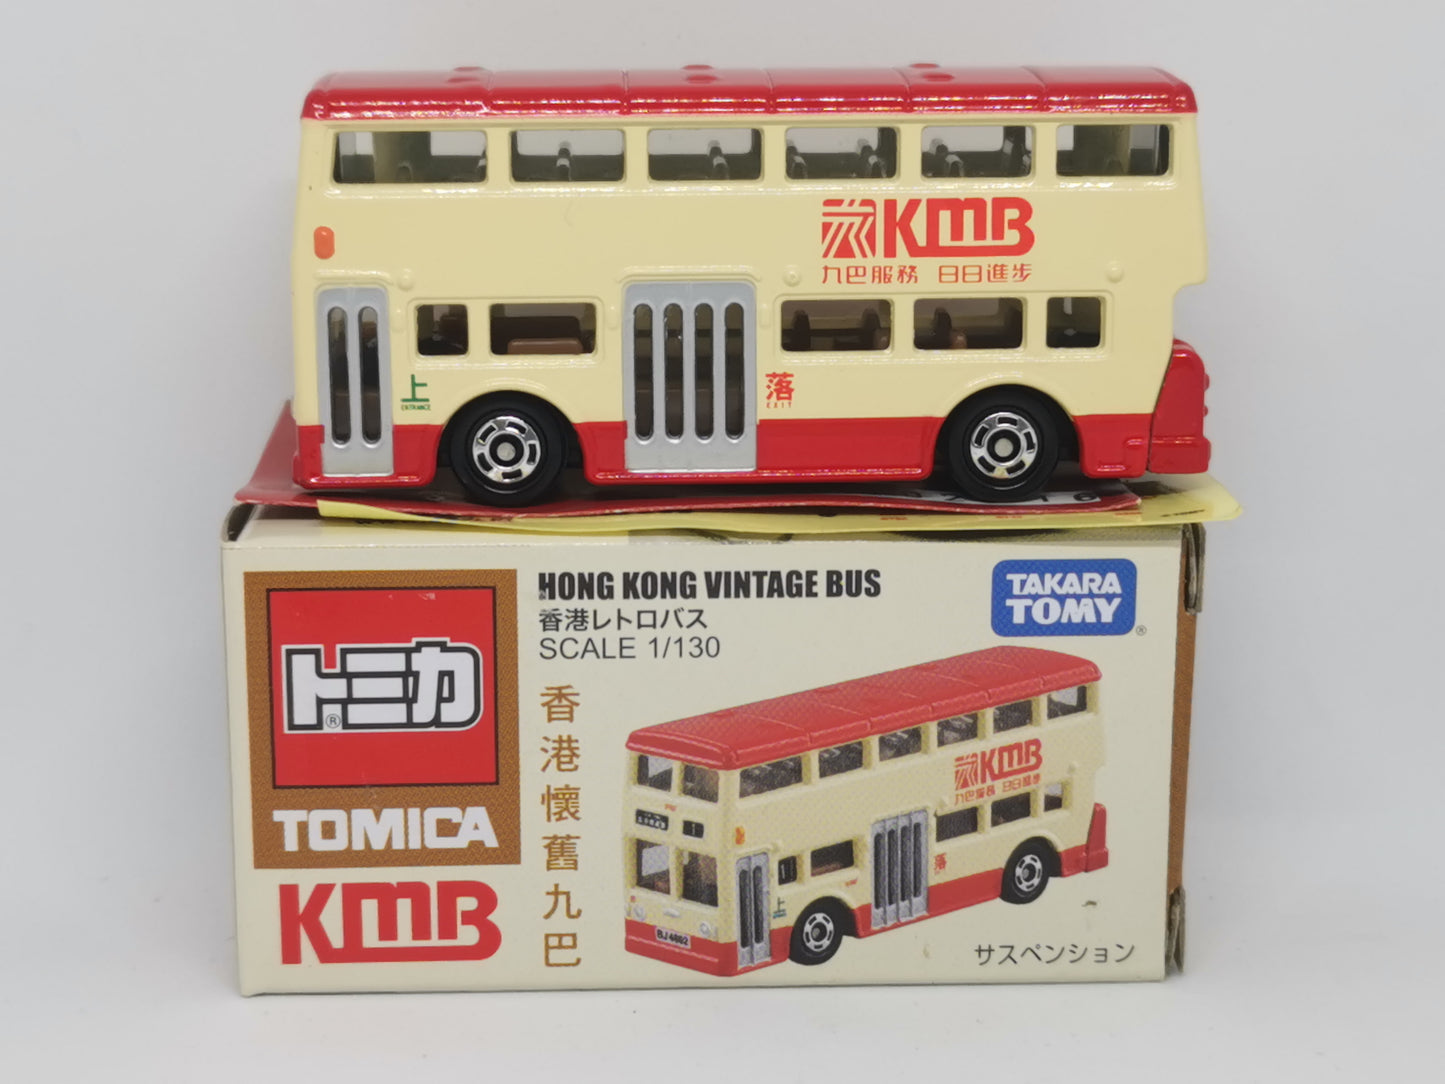 Tomica Hong Kong exclusive Hong Kong Vintage Bus KMB